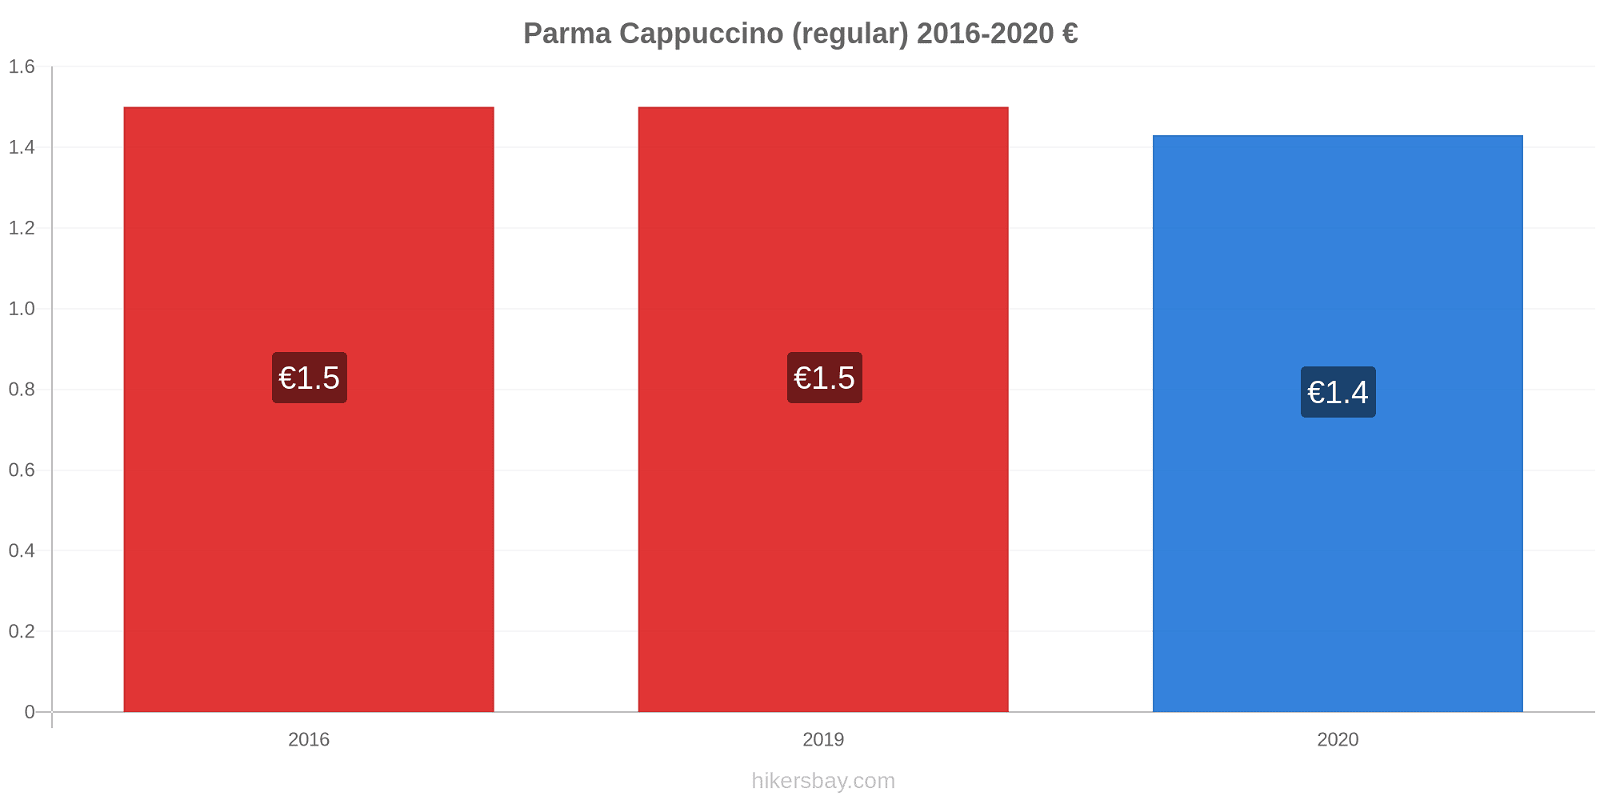 Parma variação de preço Capuccino (regular) hikersbay.com